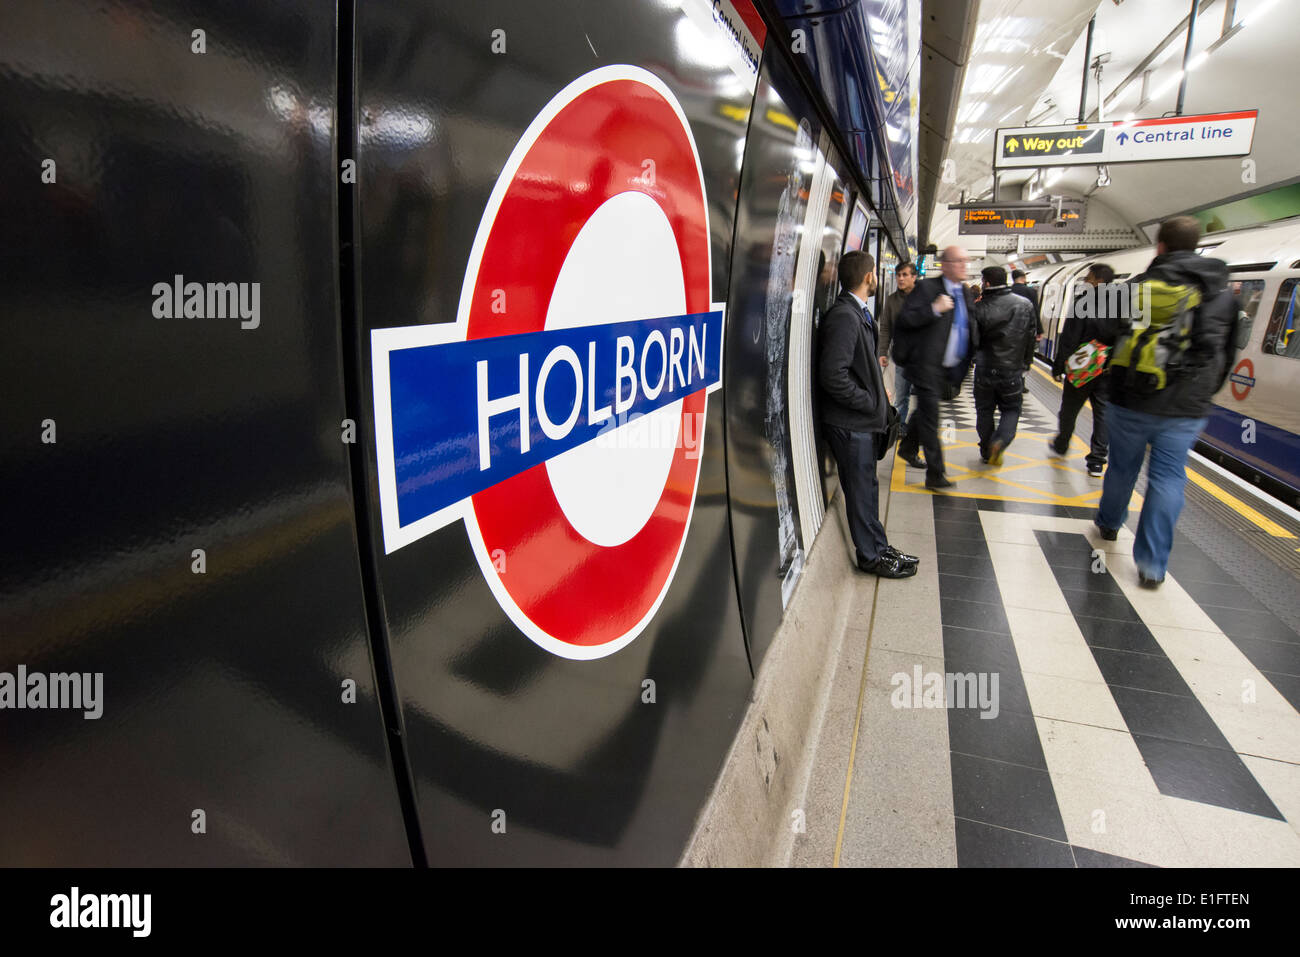 Holborn Underground Station sign, London, UK Stock Photo